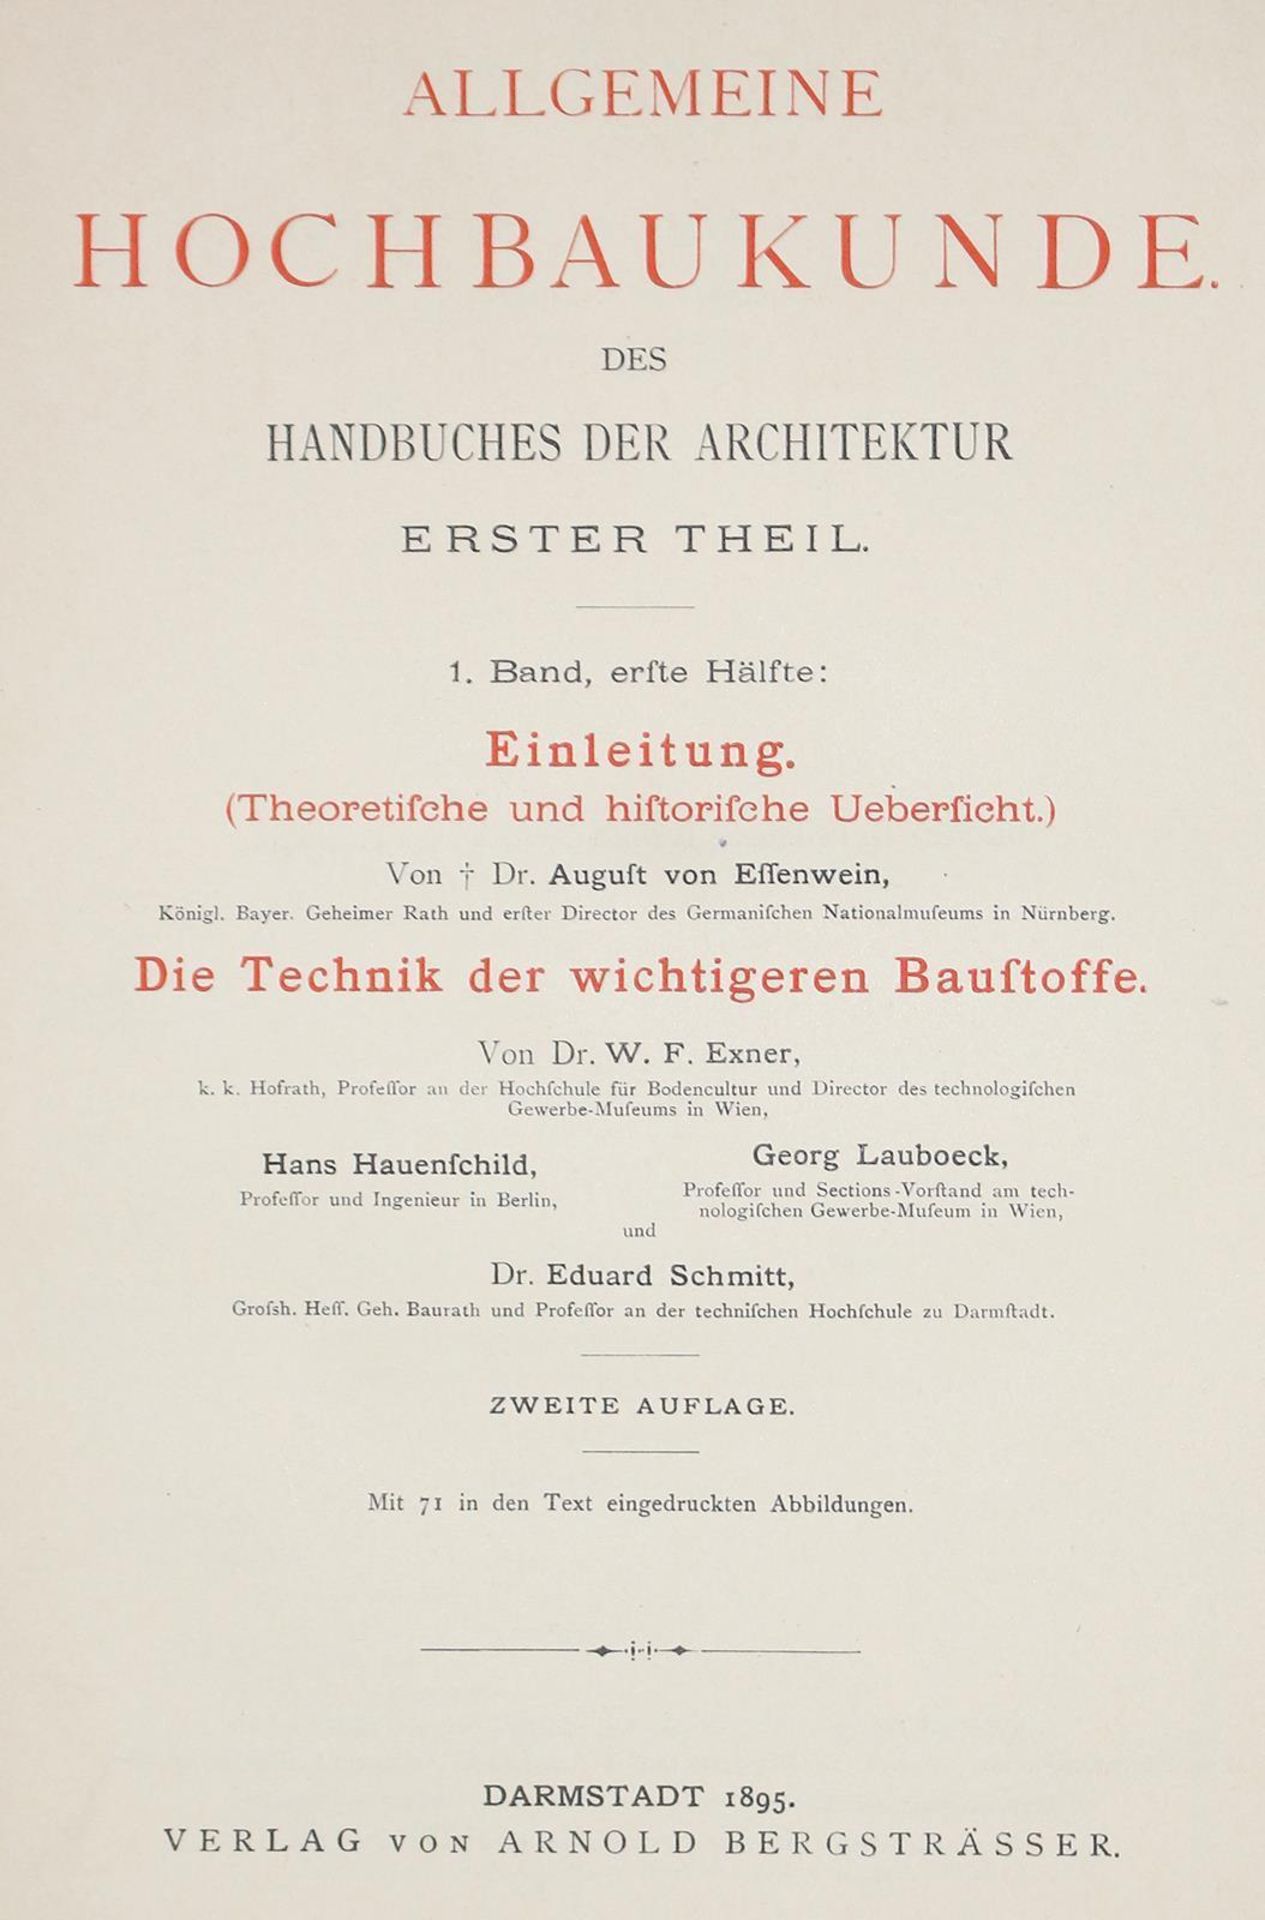 Handbuch der Architektur. - Image 3 of 3